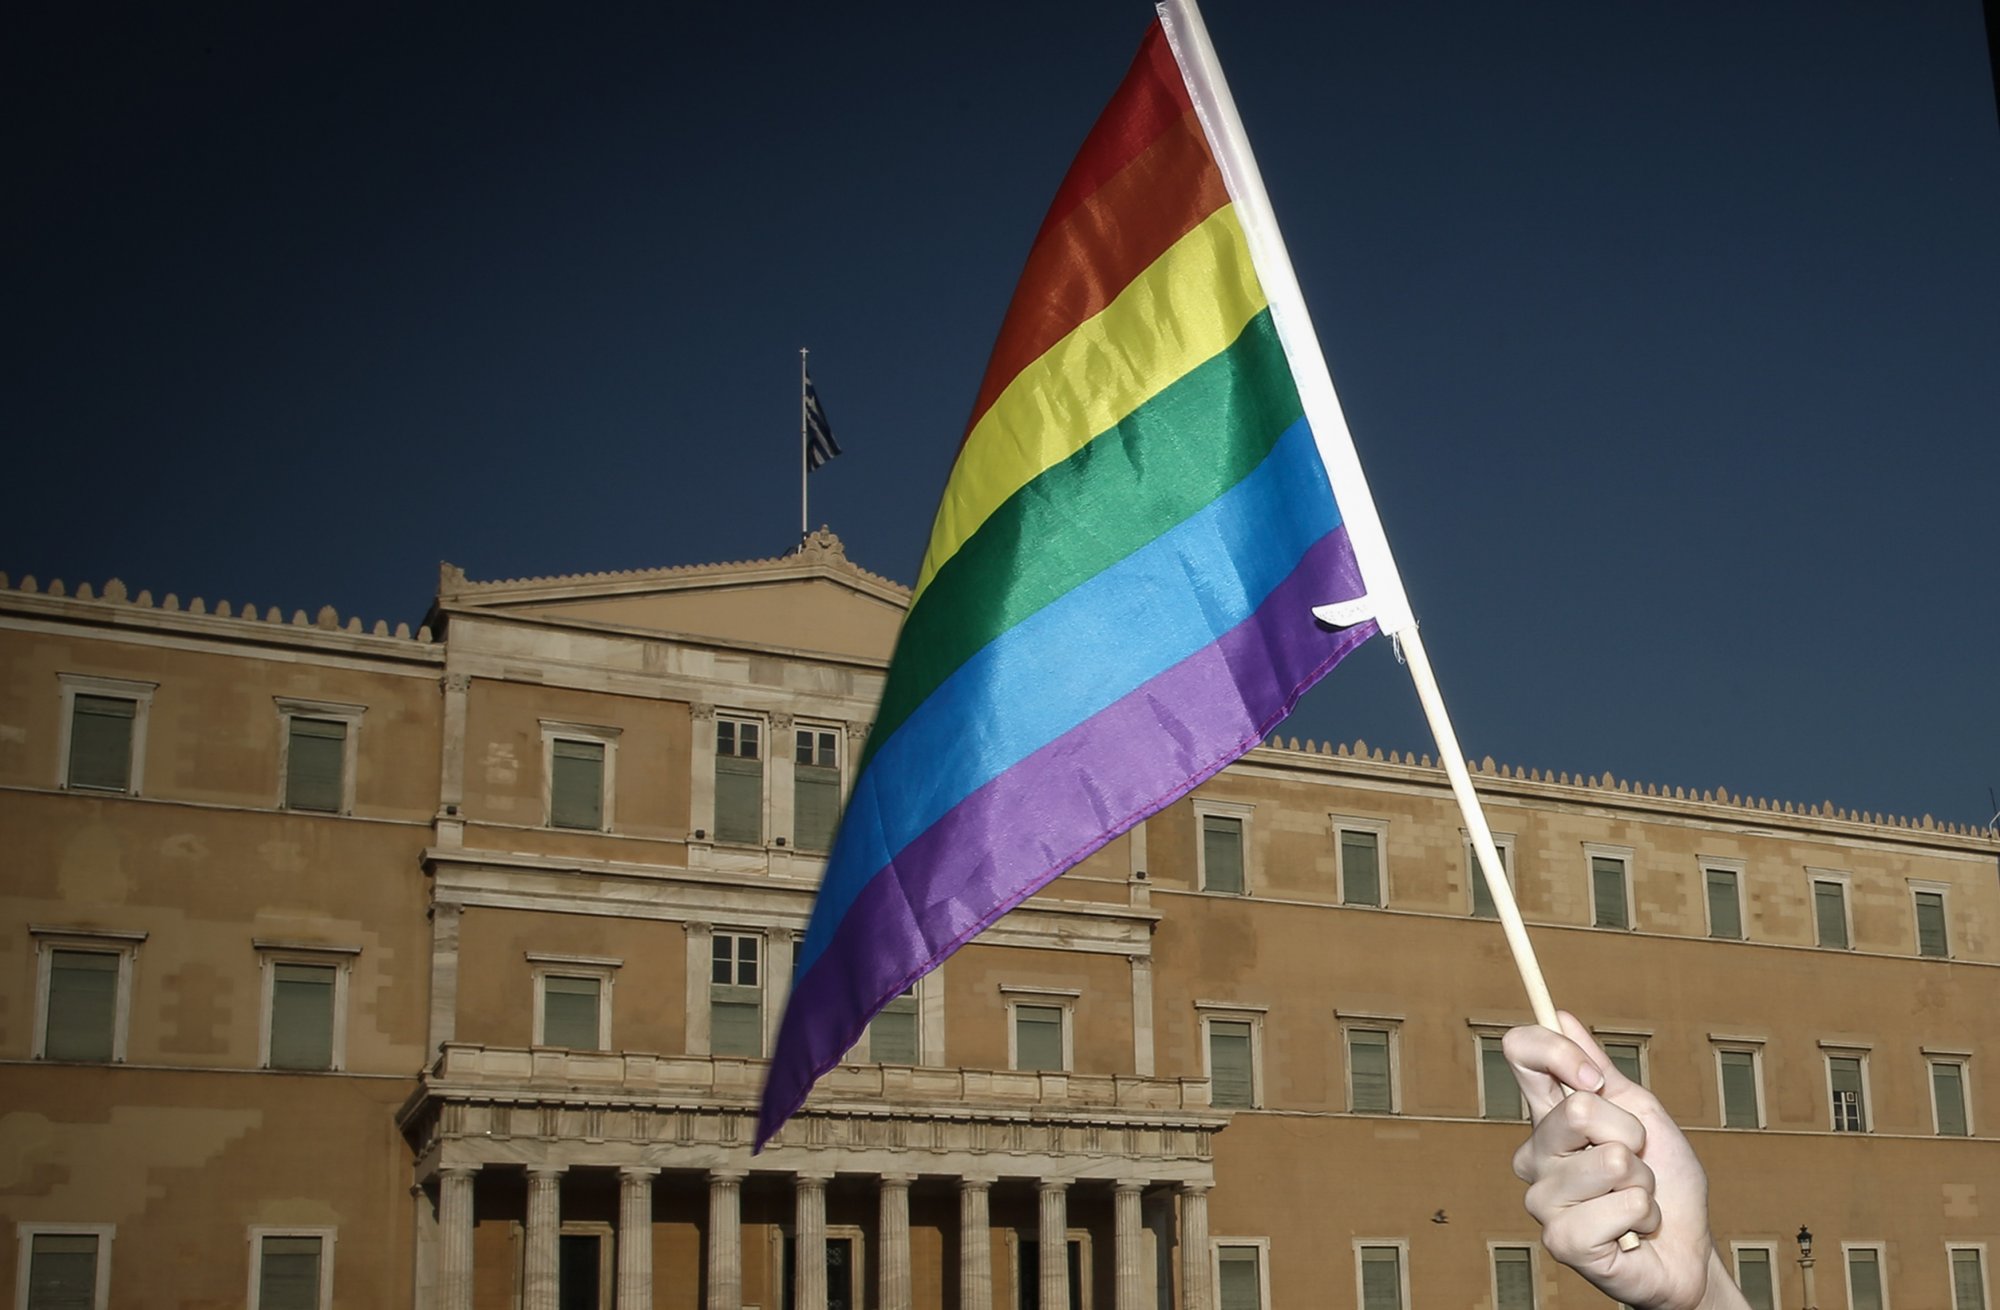 Γάμος ομόφυλων ζευγαριών: Ο Μητσοτάκης μετρά αντιδράσεις, η αντιπολίτευση τον στριμώχνει στη Βουλή